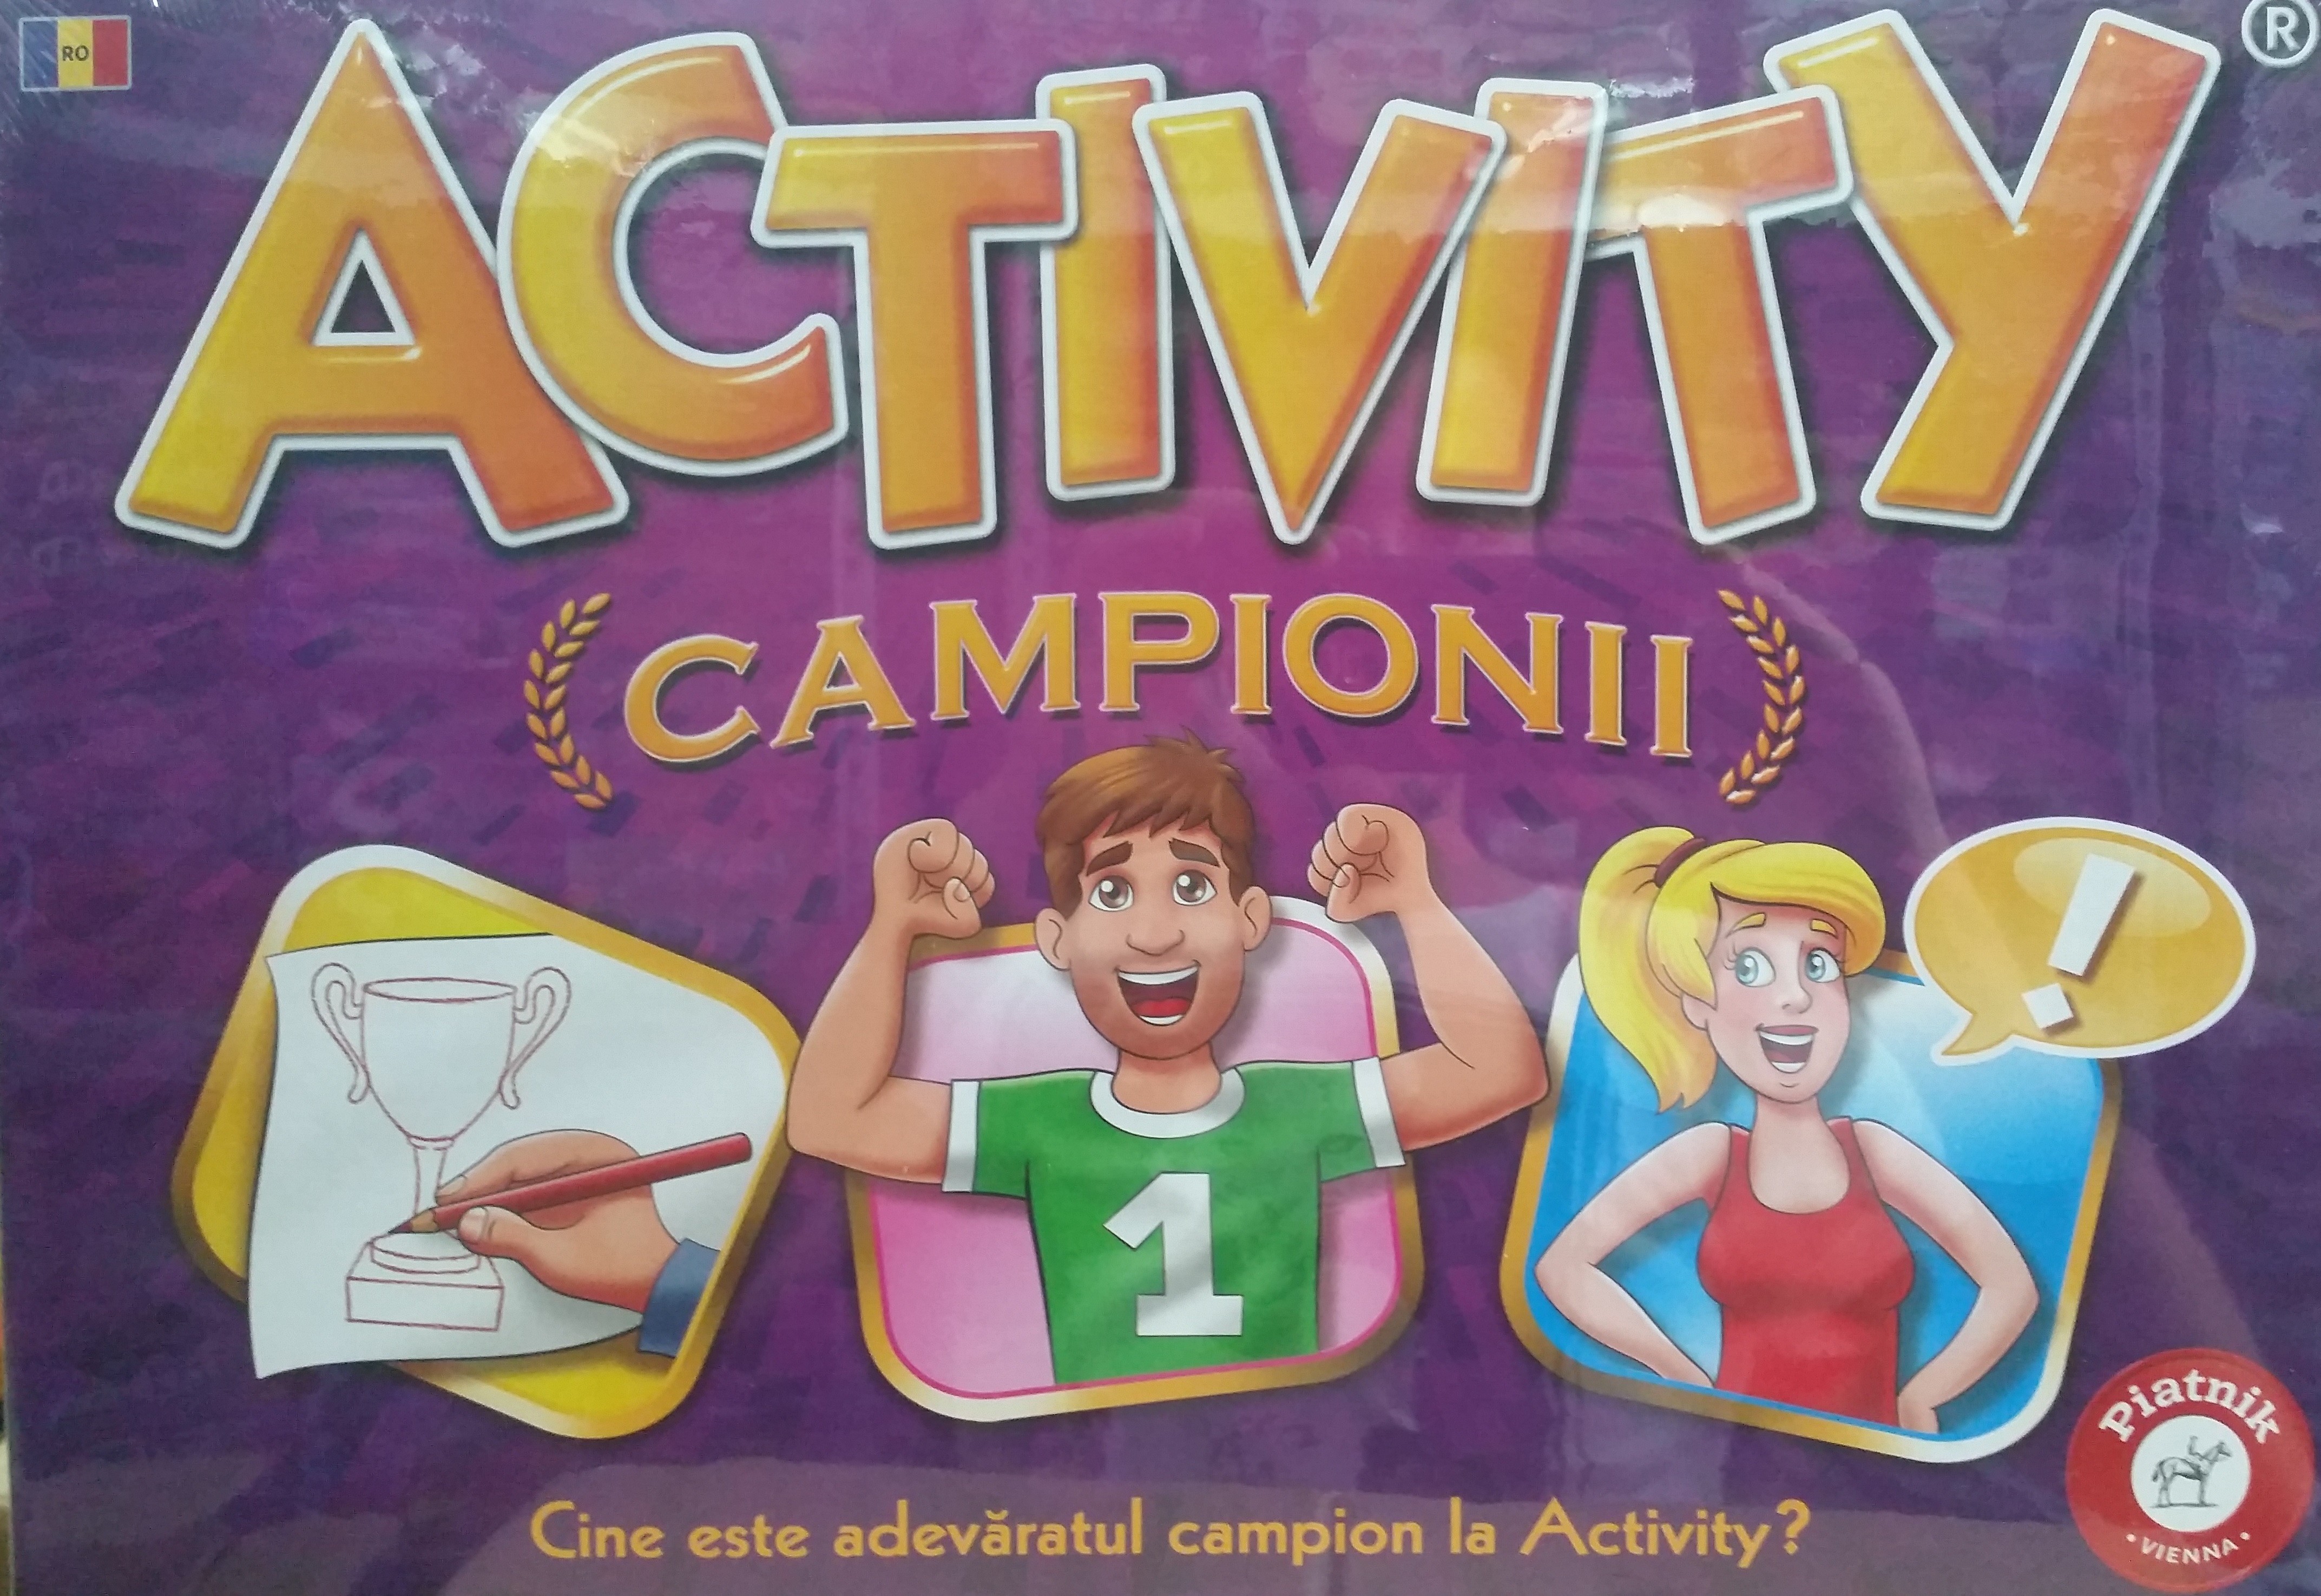 Activity Campion